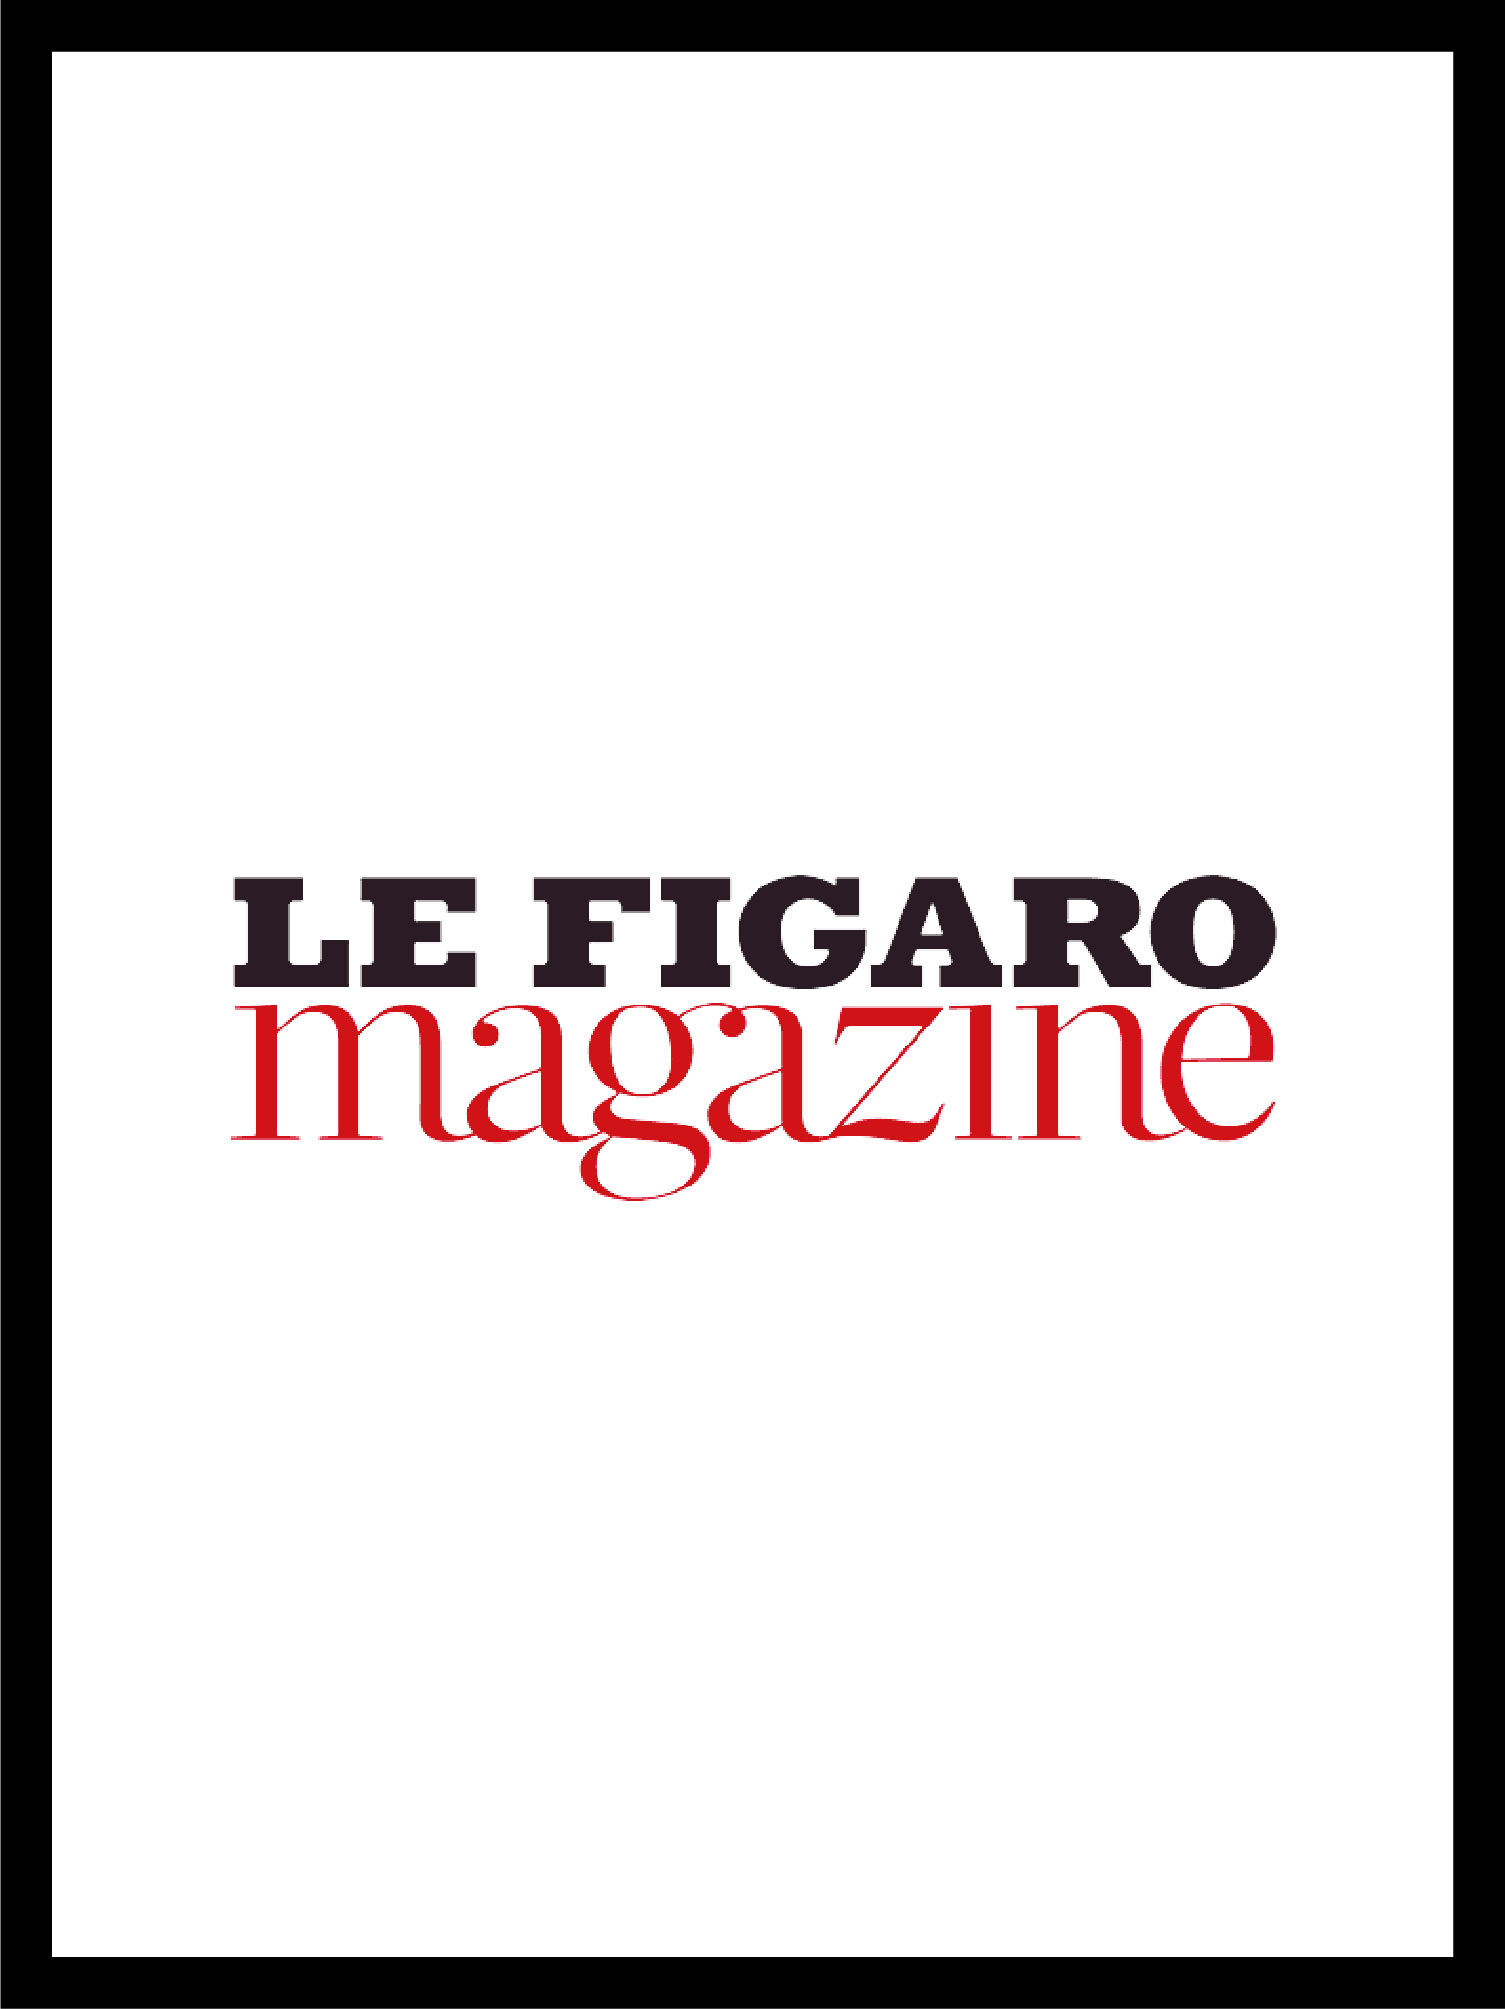 Couverture et logo Le Figaro Magazine